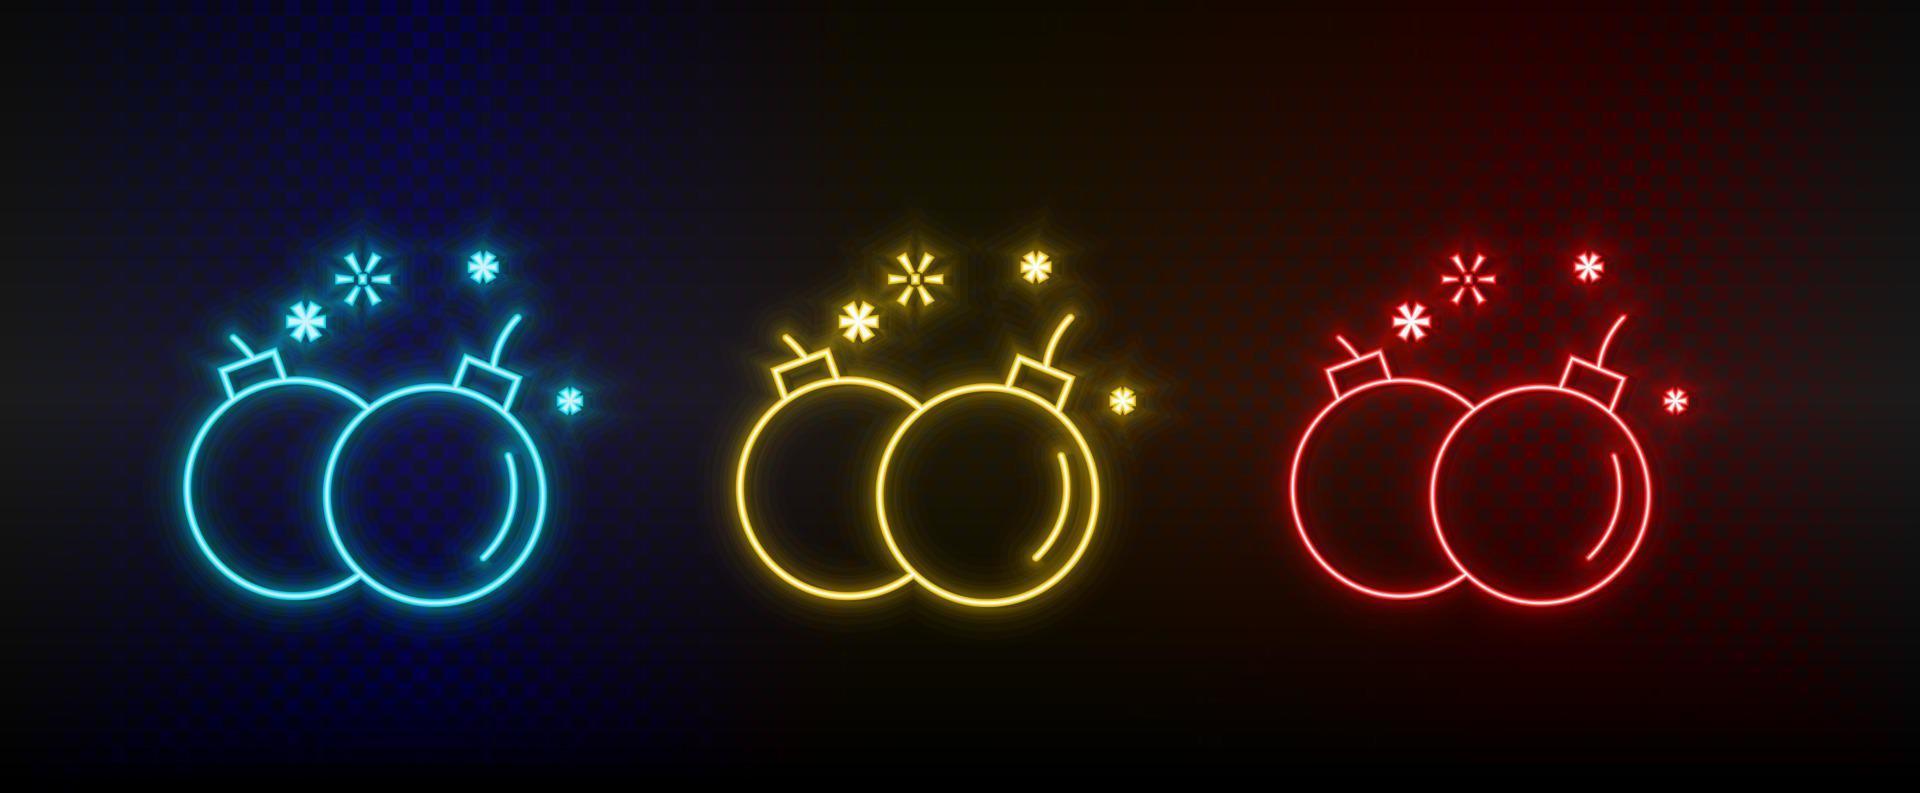 icônes au néon. arcade rétro de détonation d'armes à la bombe. ensemble d'icônes vectorielles néon rouge, bleu, jaune sur fond sombre vecteur